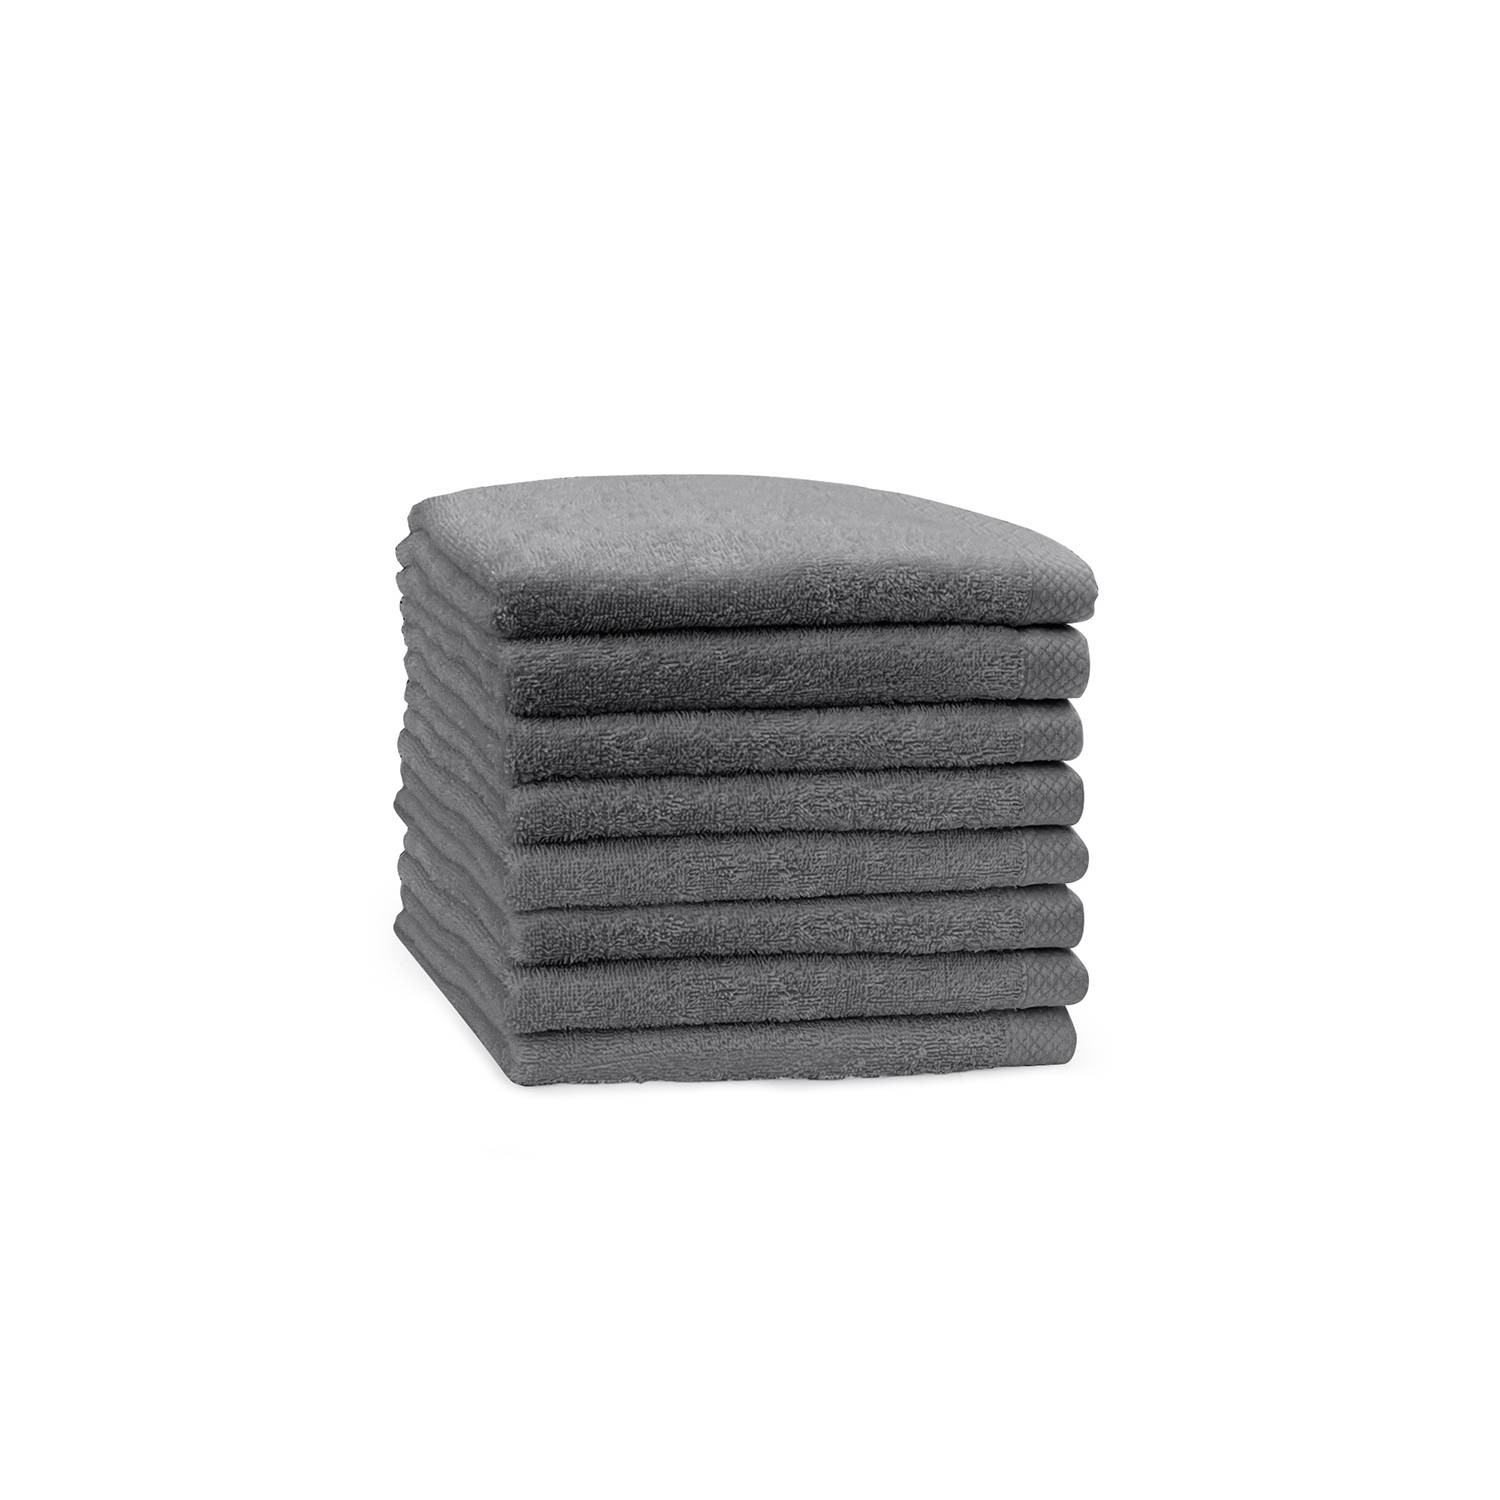 Eleganzzz Handdoek 100% Katoen 50x100cm - dark grey - Set van 8